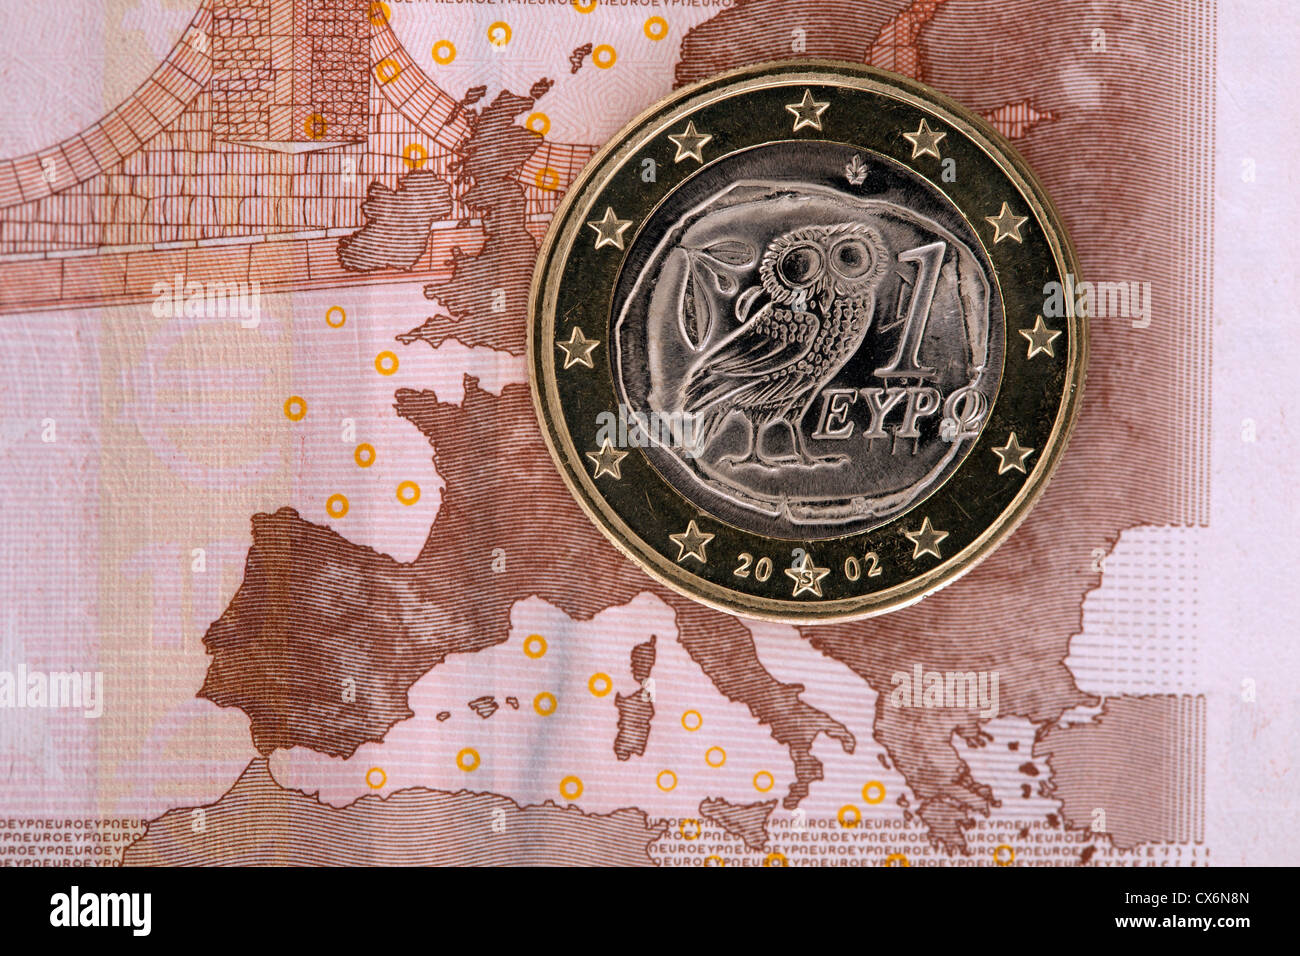 Dettaglio di una decina di banconote in euro con una moneta euro sulla sommità di esso Foto Stock